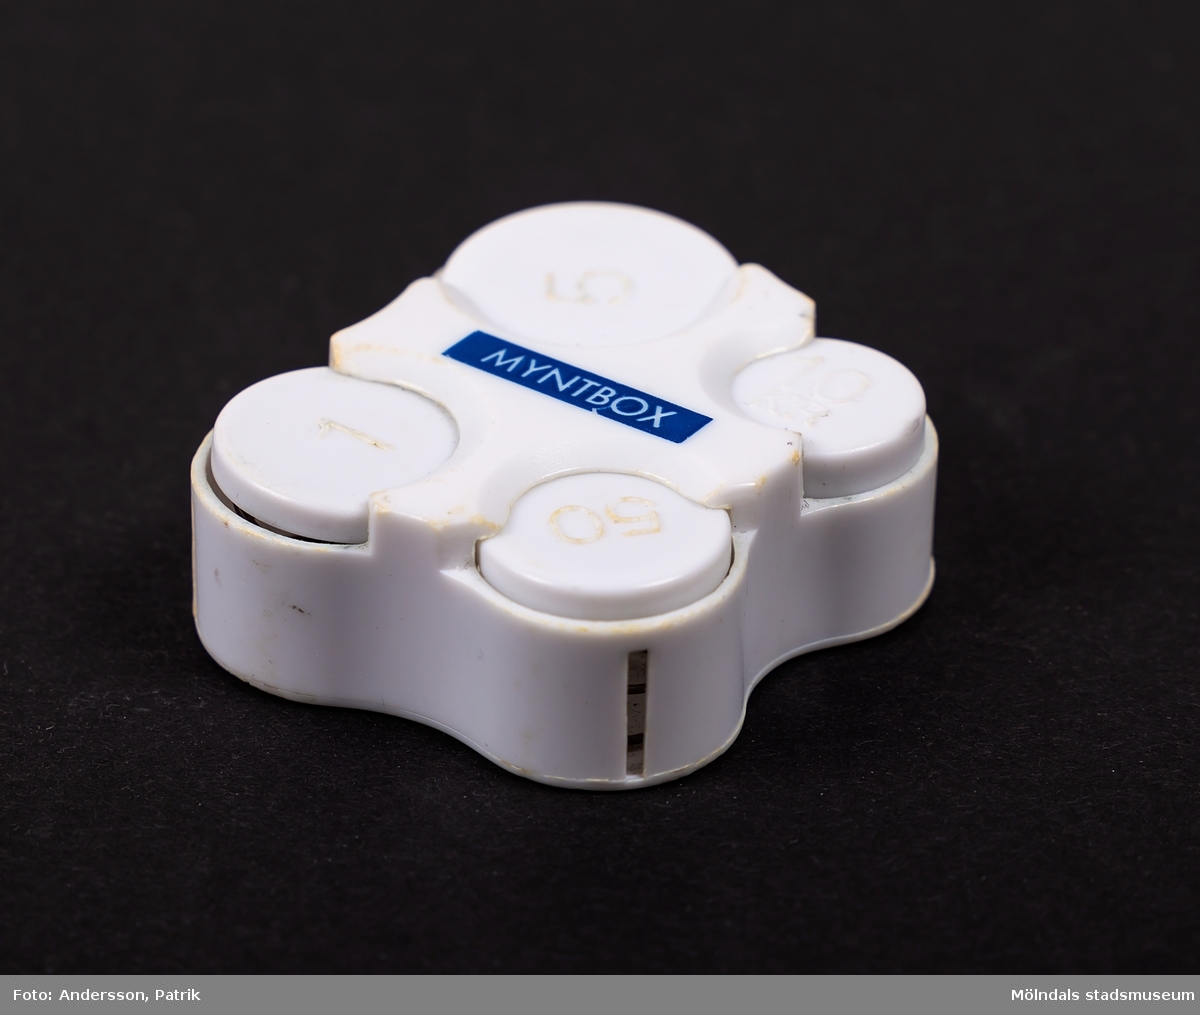 Myntbox i vit plast med texten MYNTBOX i vitt på blå botten. Mynthållaren har fack för femtioöringar, enkronor, femkronor och tiokronorsmynt. 

Tillverkad 1991 eller senare, då tiokronorsmyntet lanserades det året.